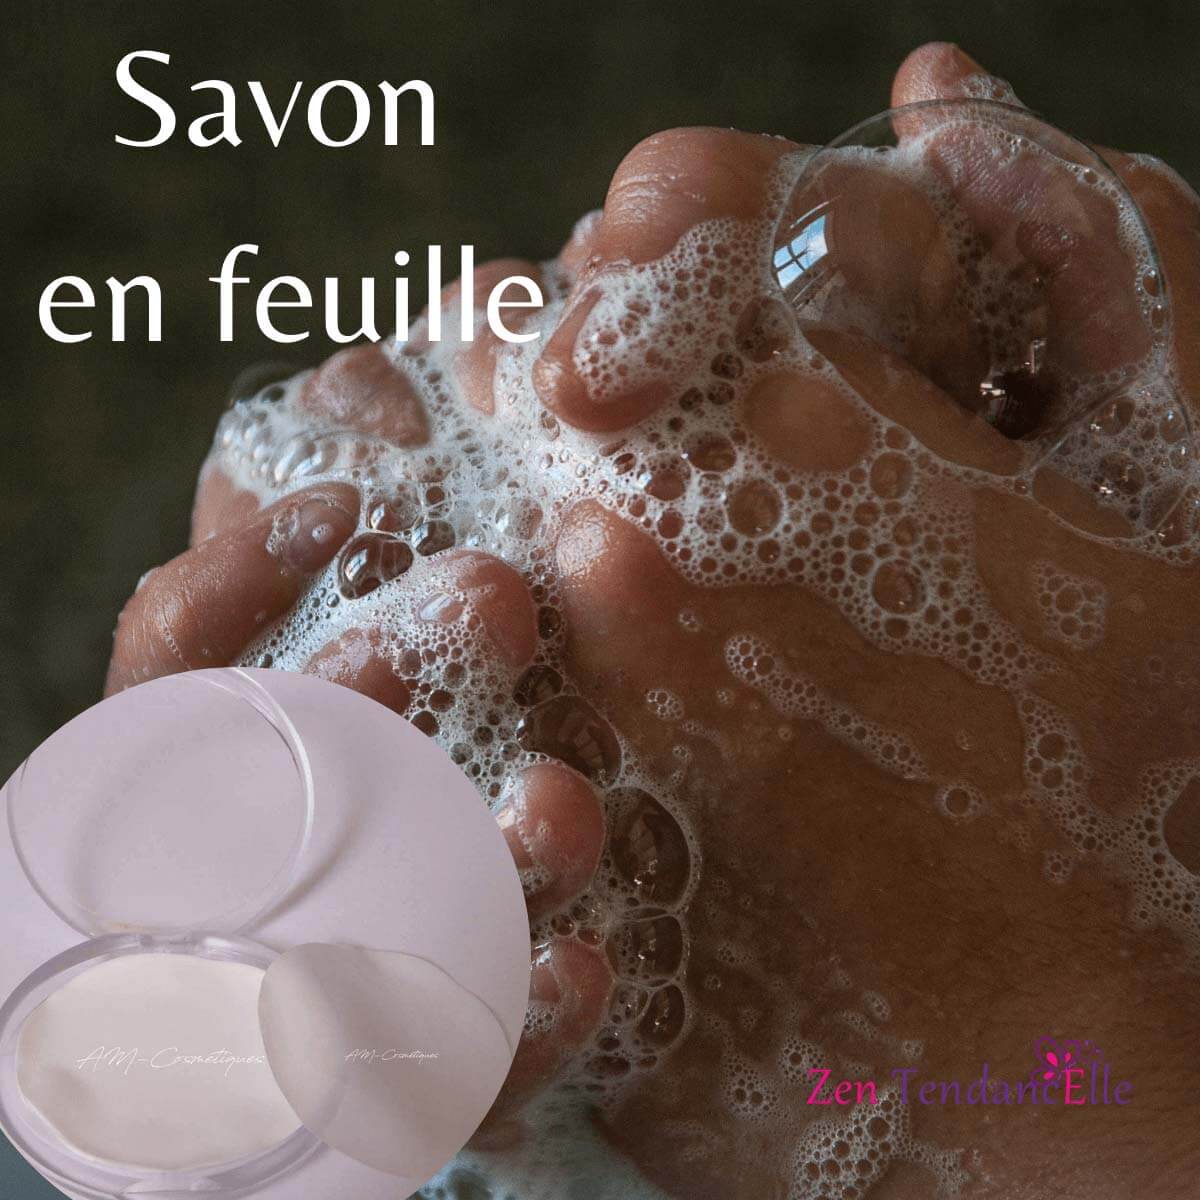 Feuille_de_savon_pratique_Zen_TendancElle_avec_AM-Cosmetiques.jpg